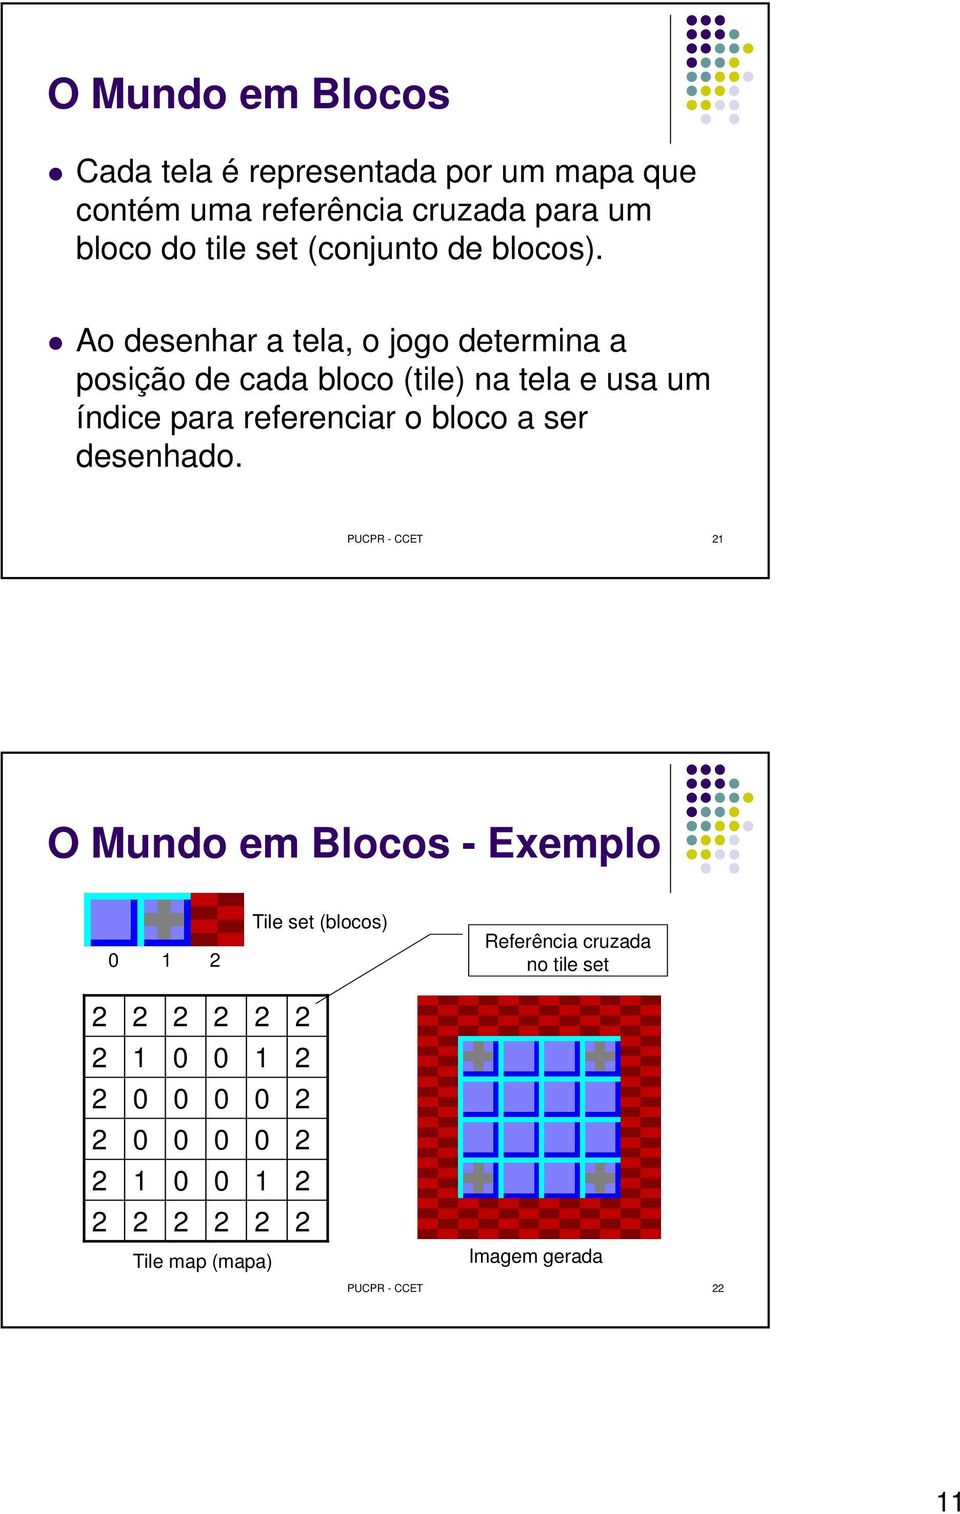 Ao desenhar a tela, o jogo determina a posição de cada bloco (tile) na tela e usa um índice para